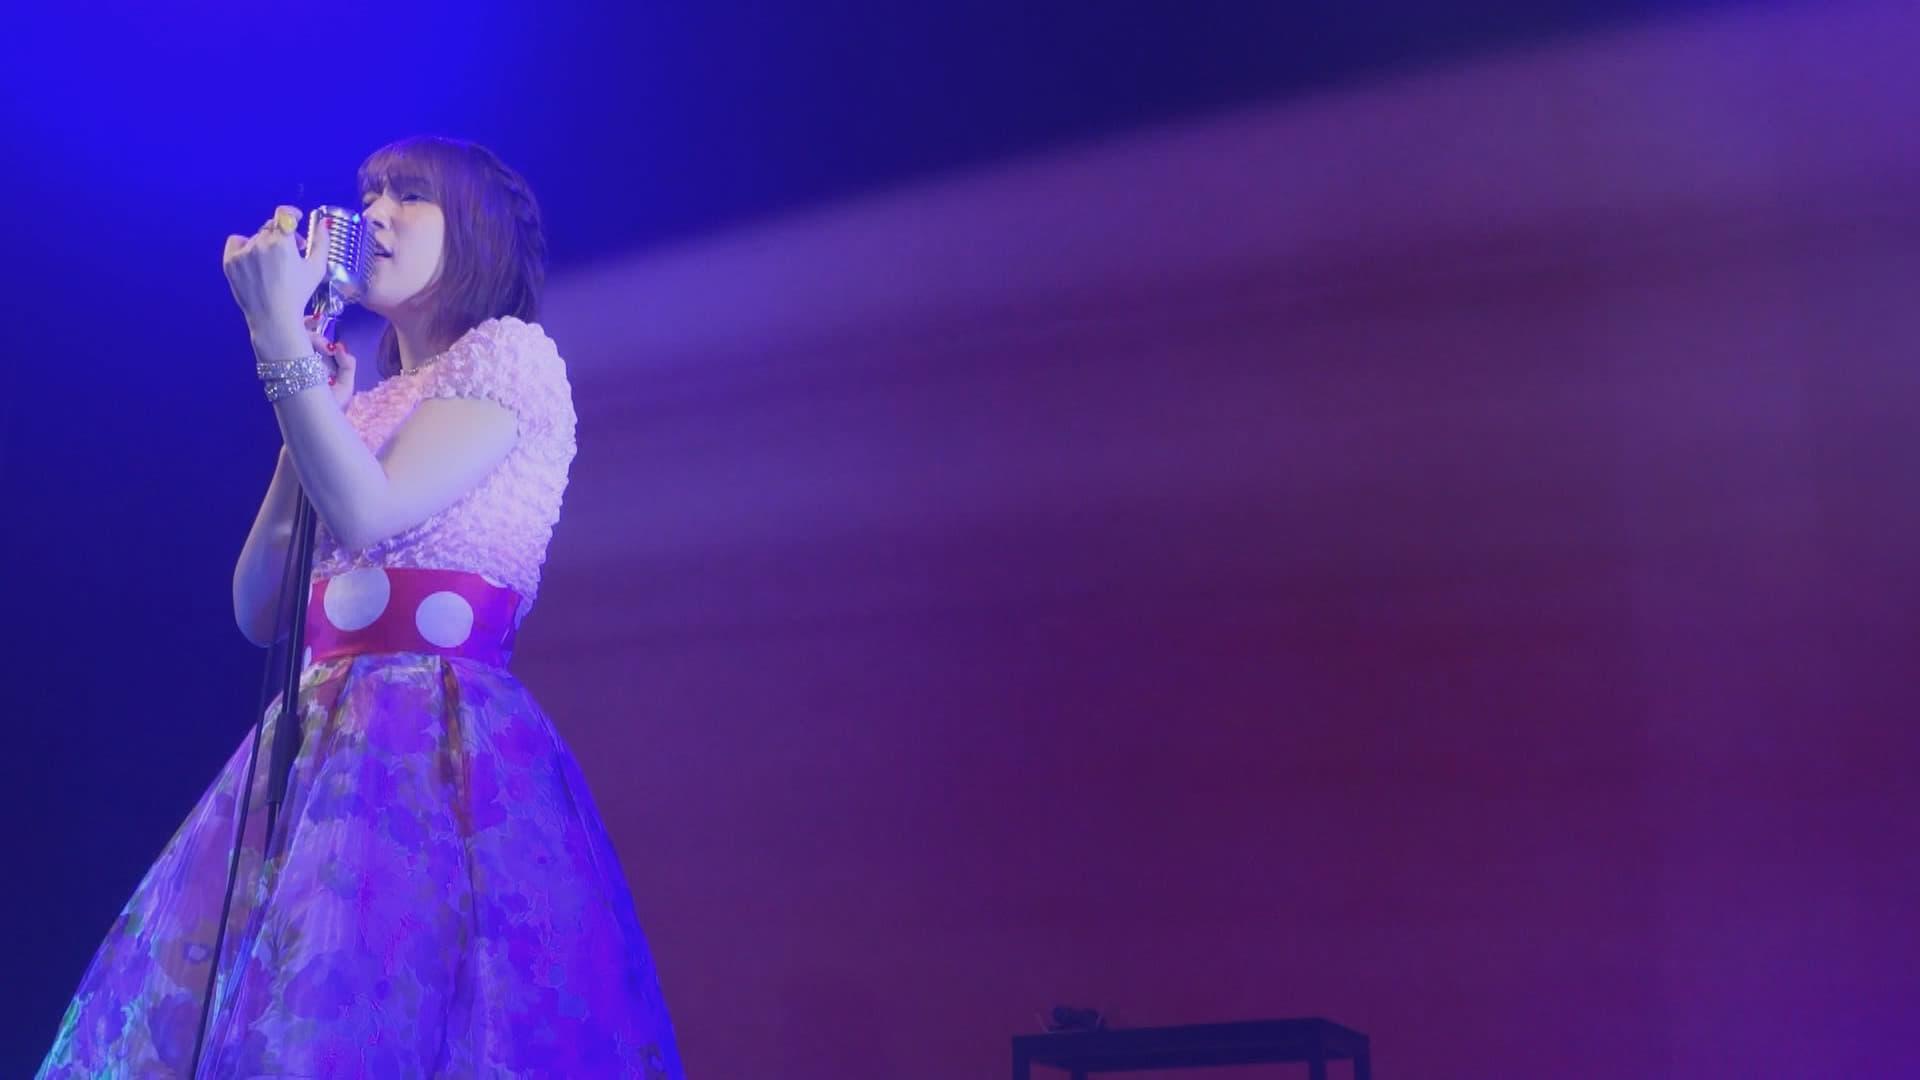 UCHIDA MAAYA Online LIVE「Hello, ONLINE contact!」 backdrop